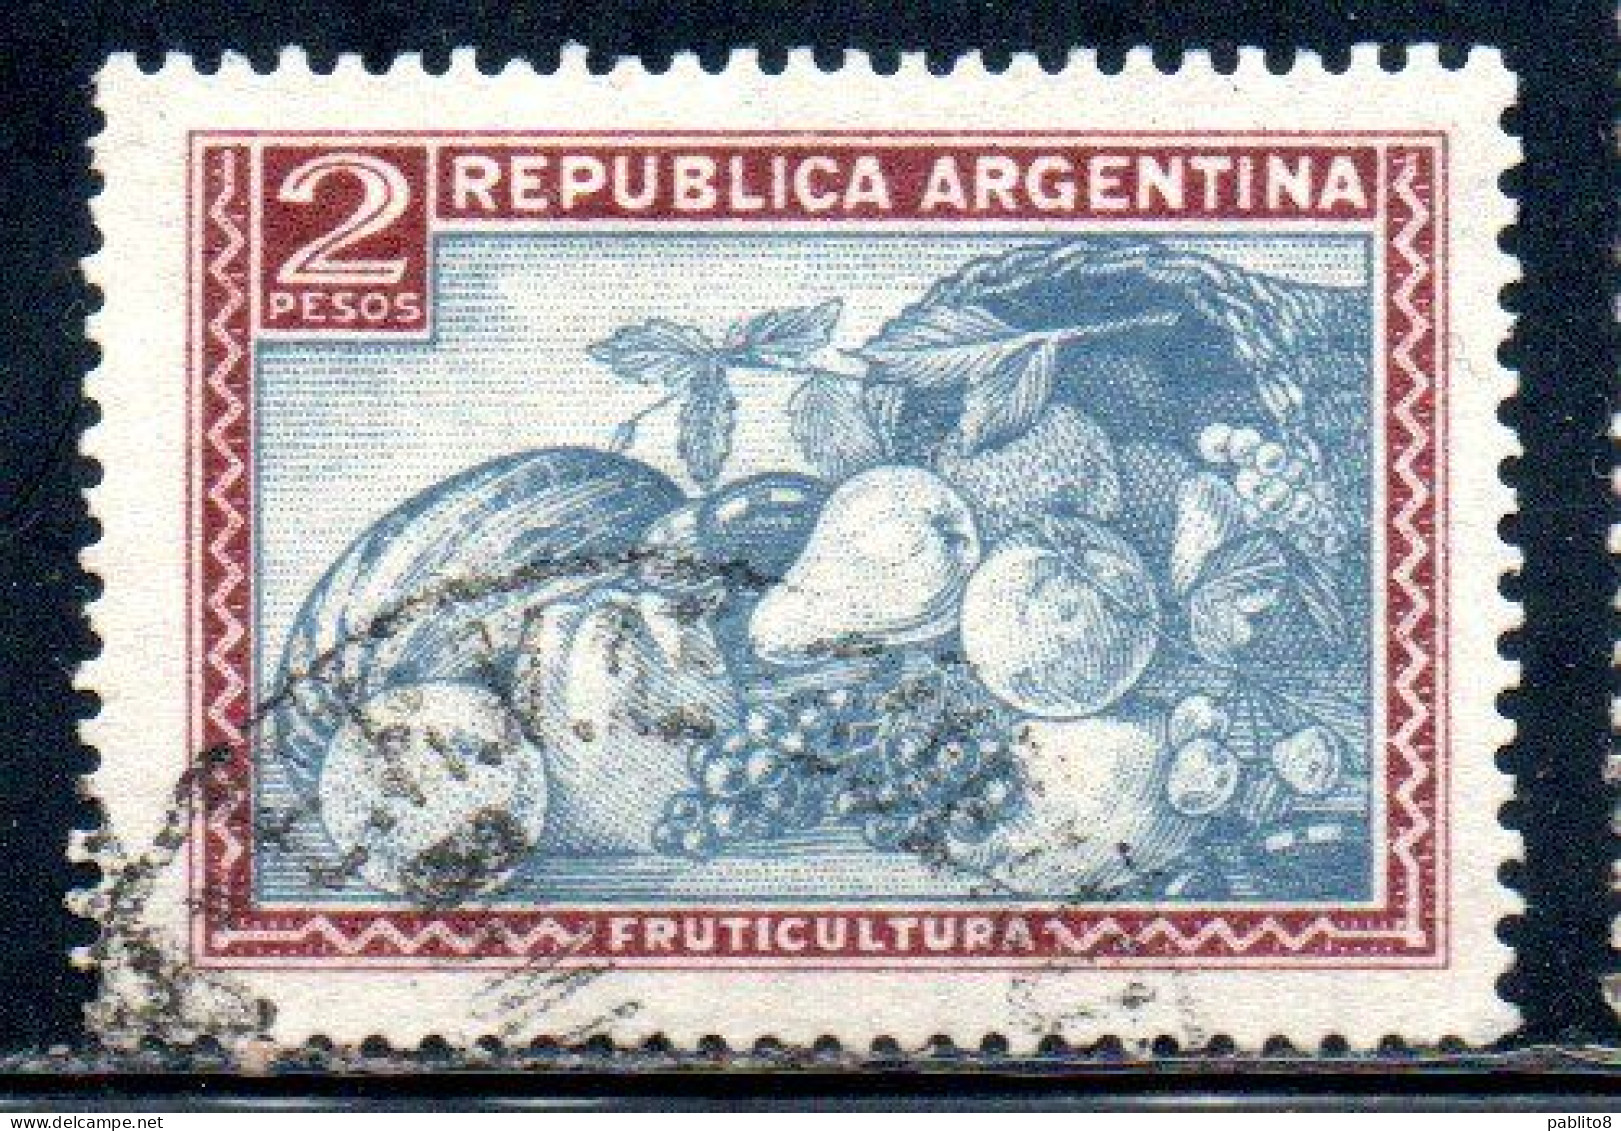 ARGENTINA 1942 1950 1949 FRUIT 2p USED USADO OBLITERE' - Usati